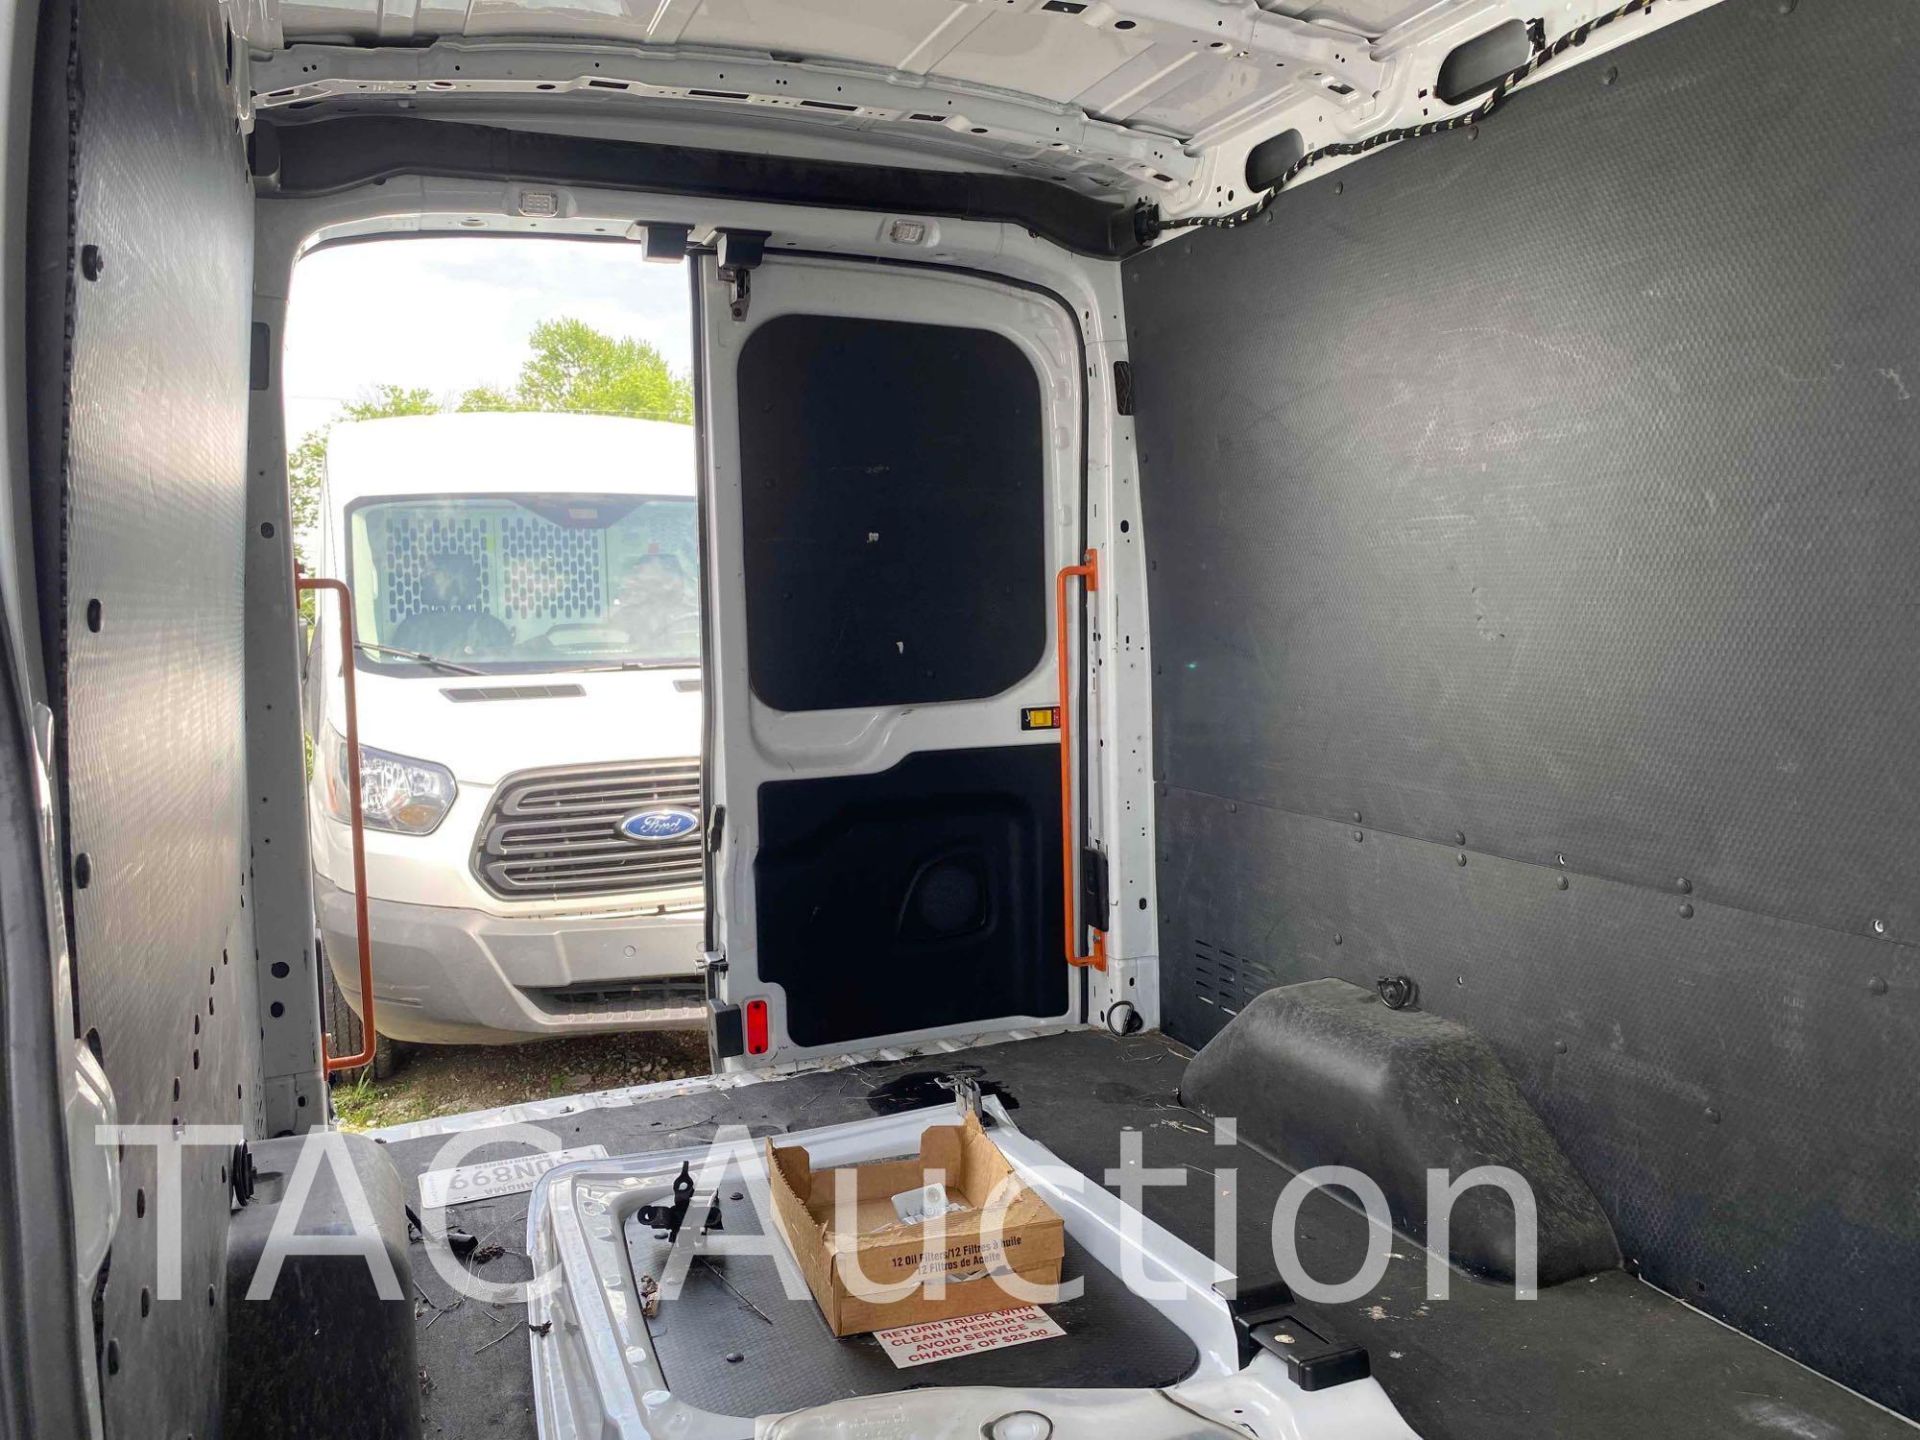 2019 Ford Transit 150 Cargo Van - Image 16 of 50